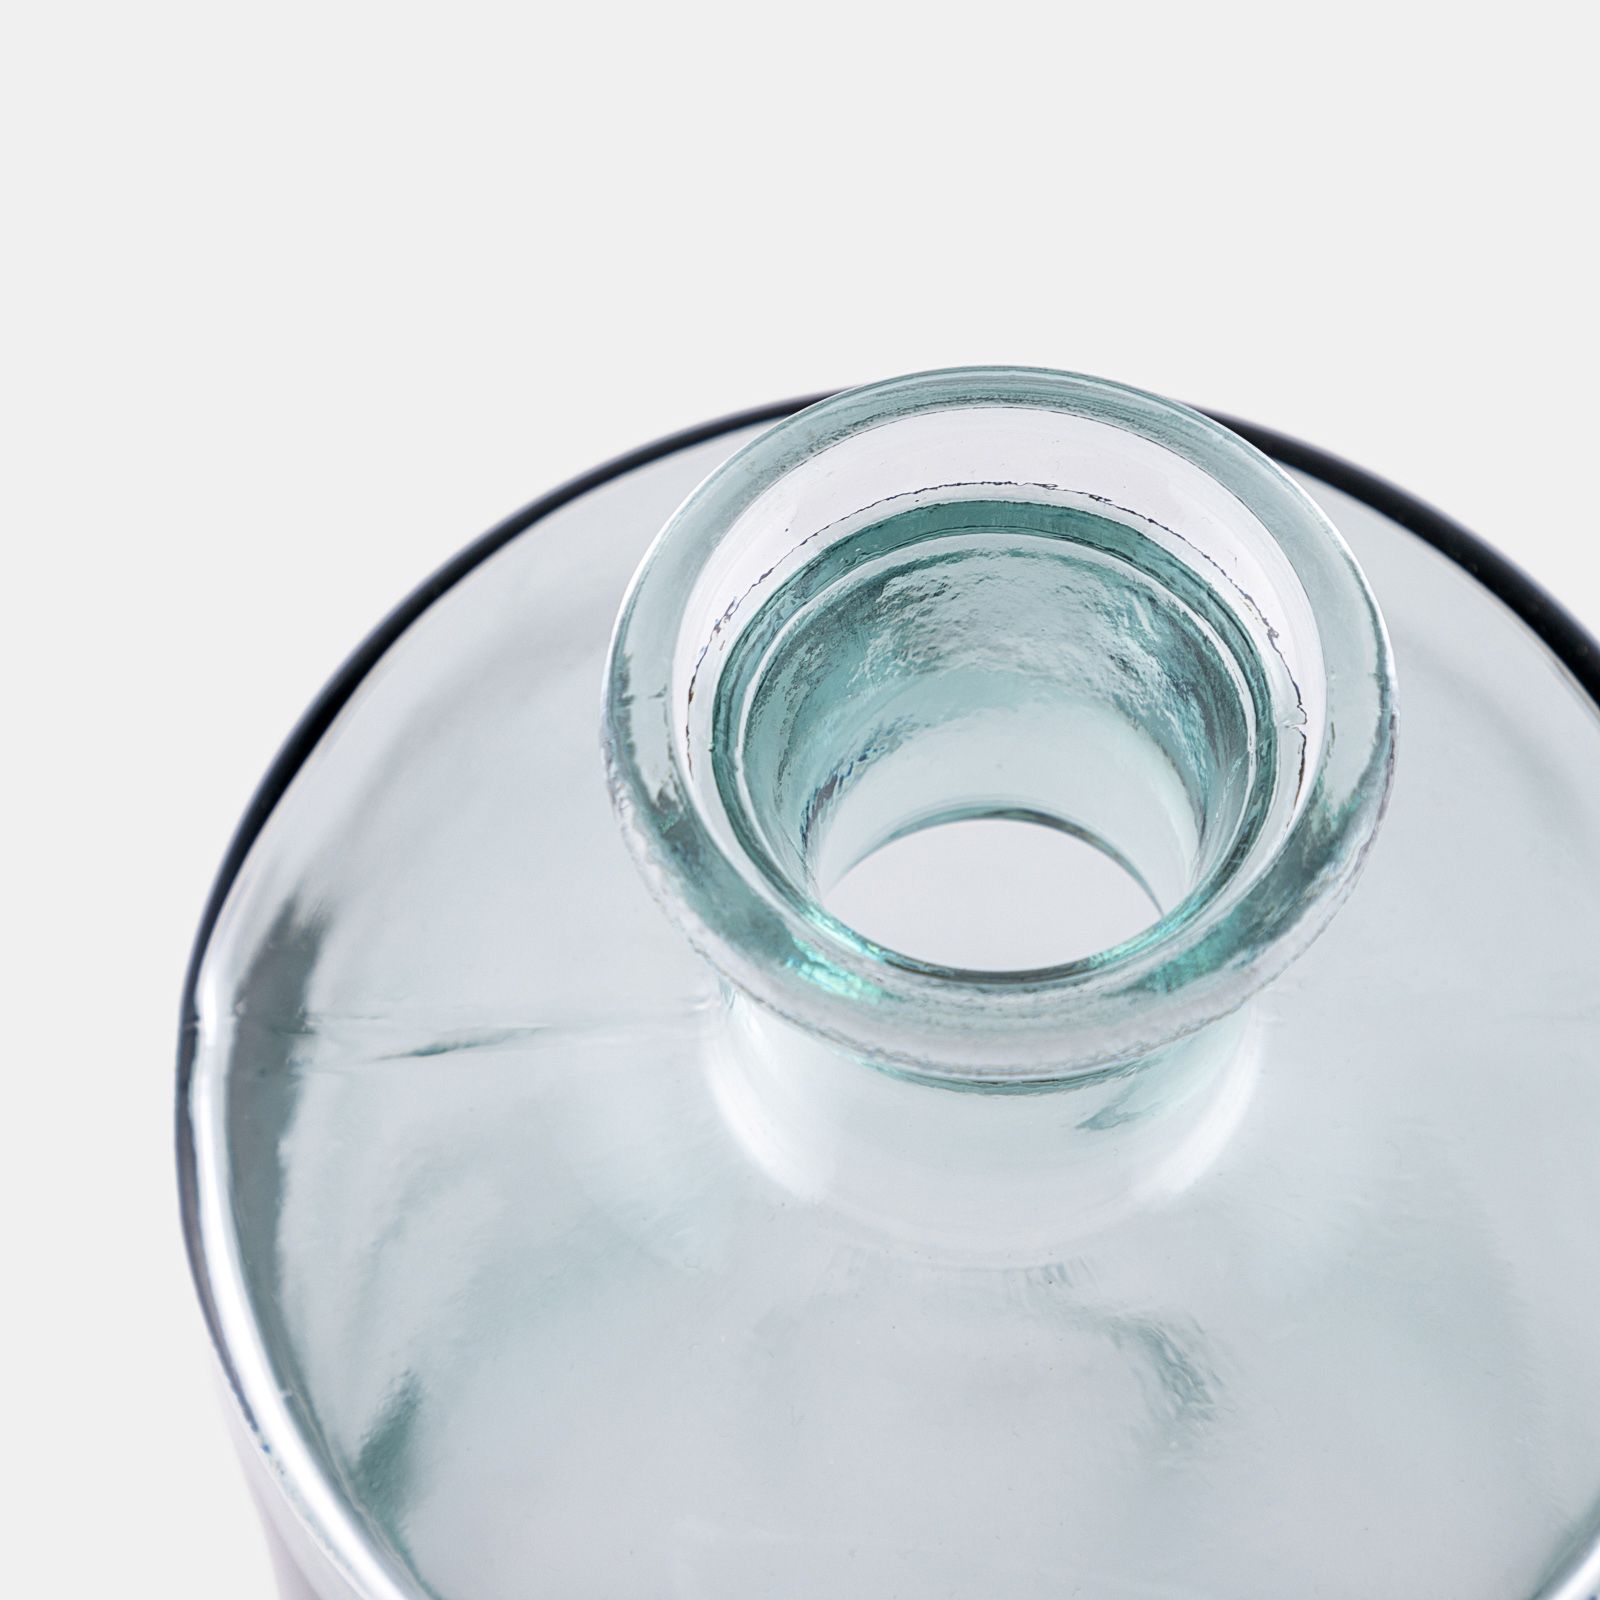 Vaso da interno h 40 cm in vetro riciclato trasparente - Astred